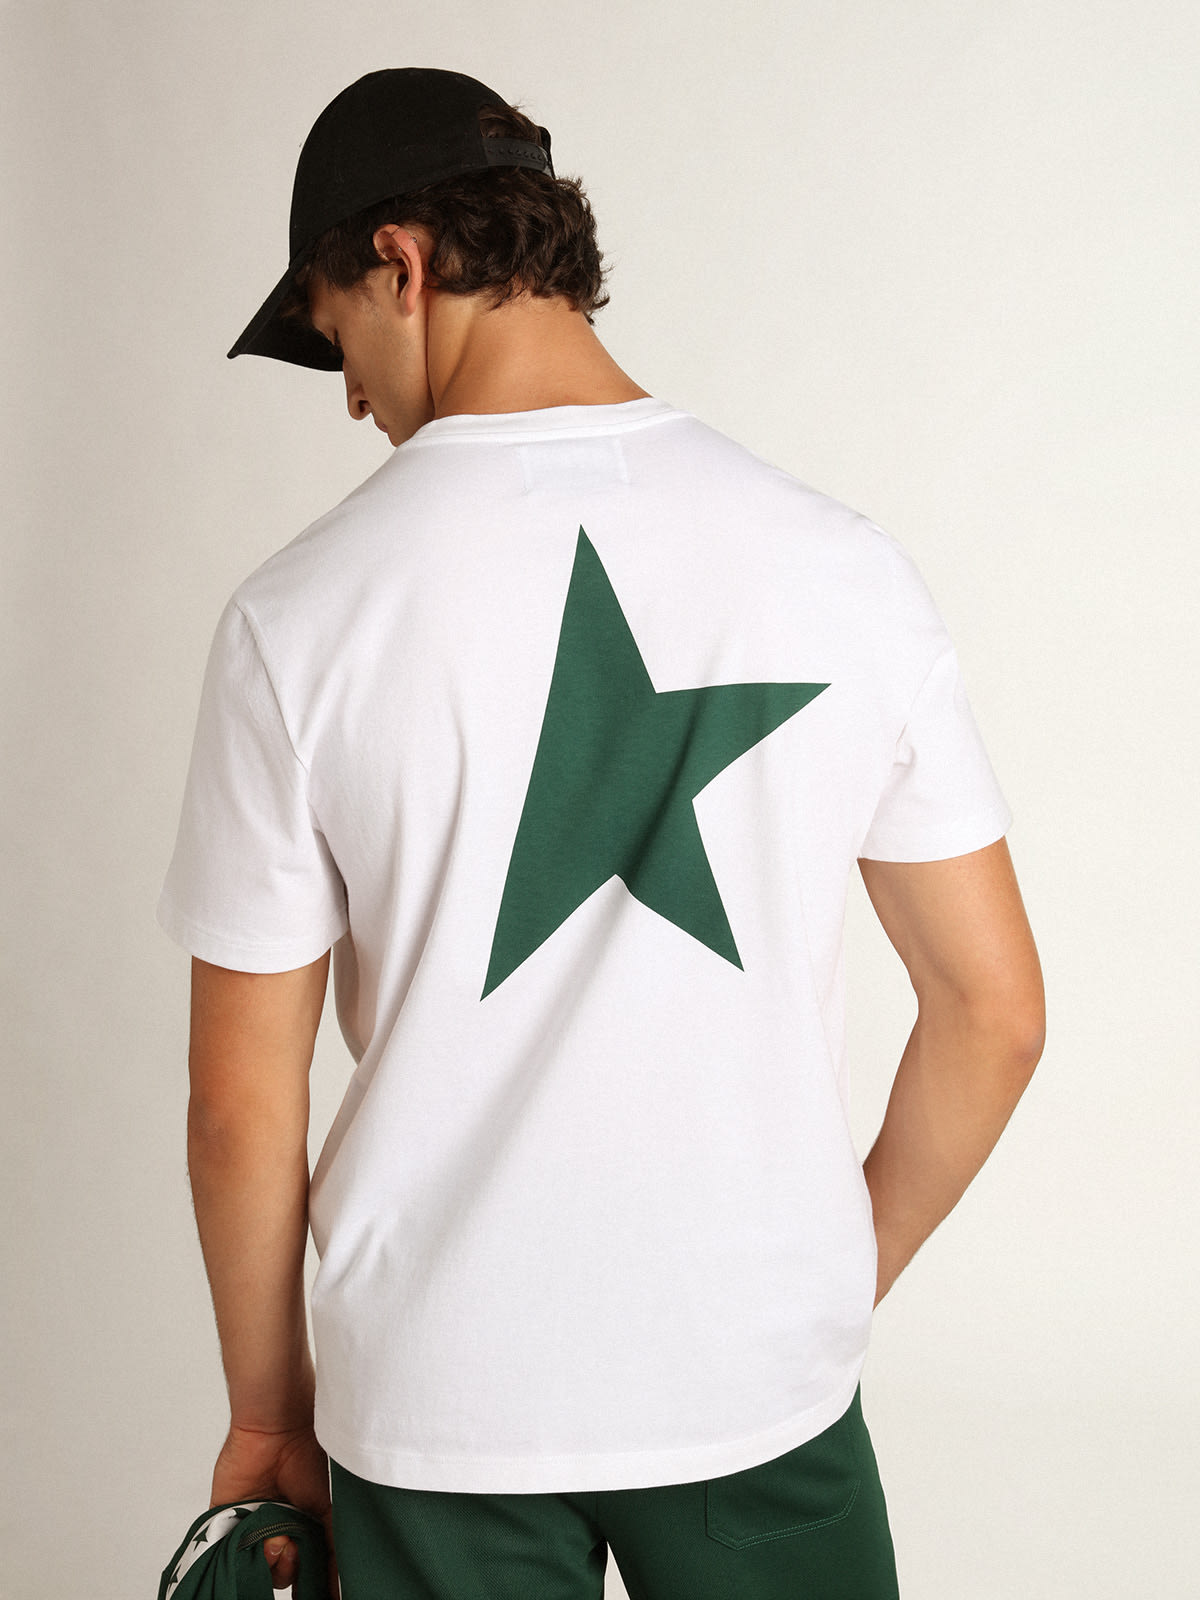 Golden Goose - T-shirt da uomo bianca con logo e stella verdi a contrasto in 